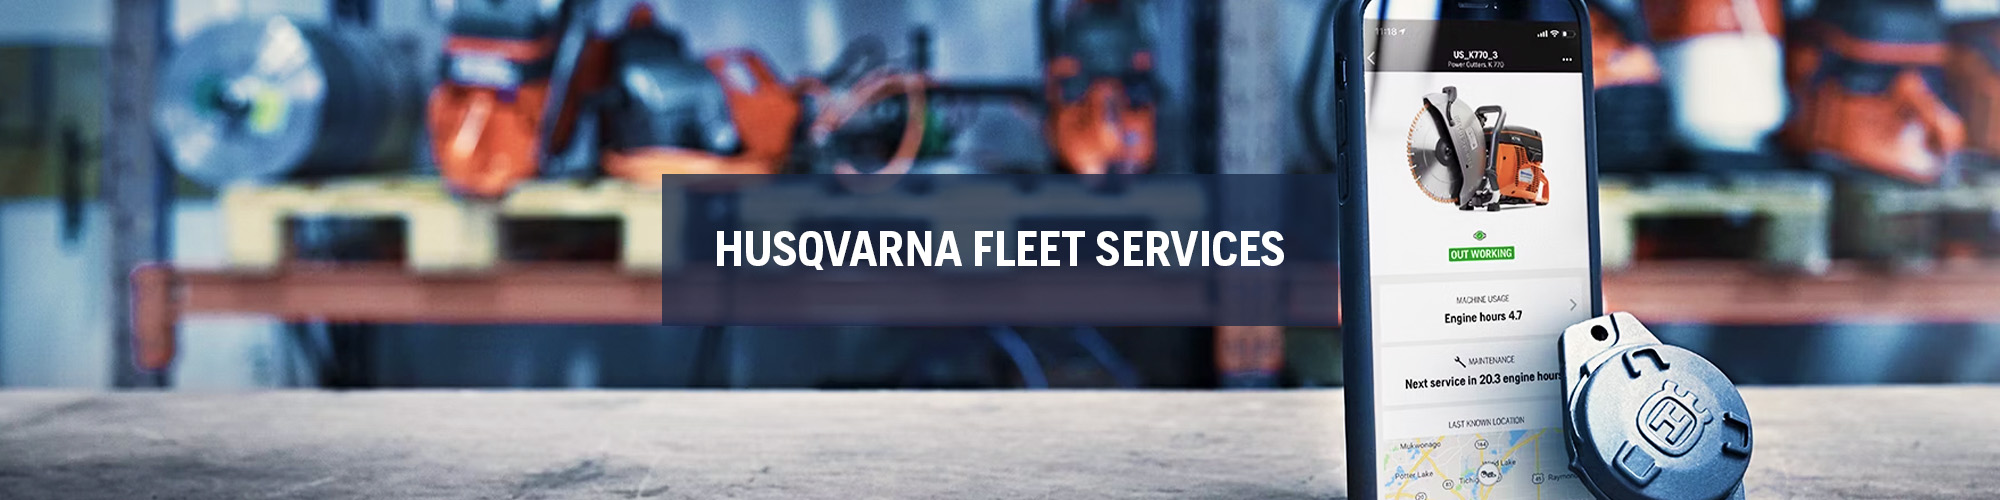 Husqvarna Fleet Services: Styr din Flotta Smartare